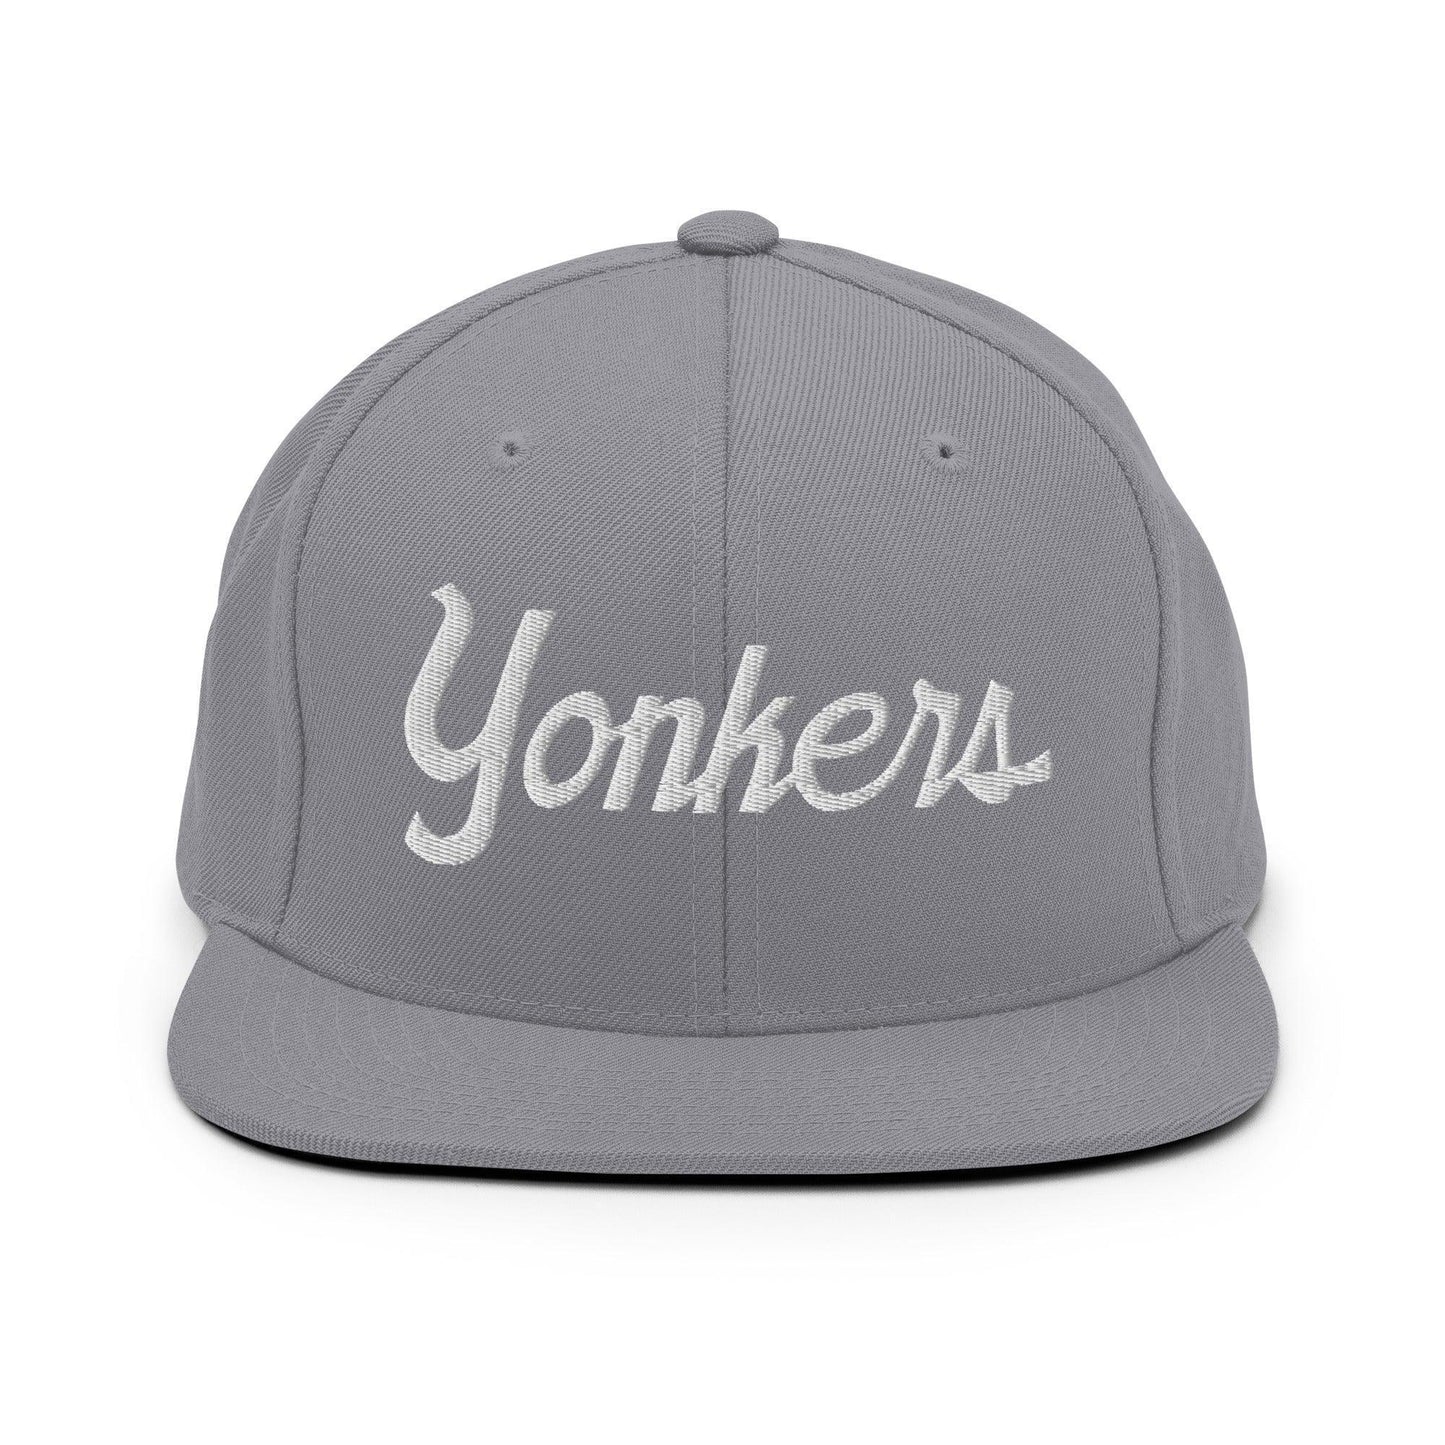 Yonkers Script Snapback Hat Silver